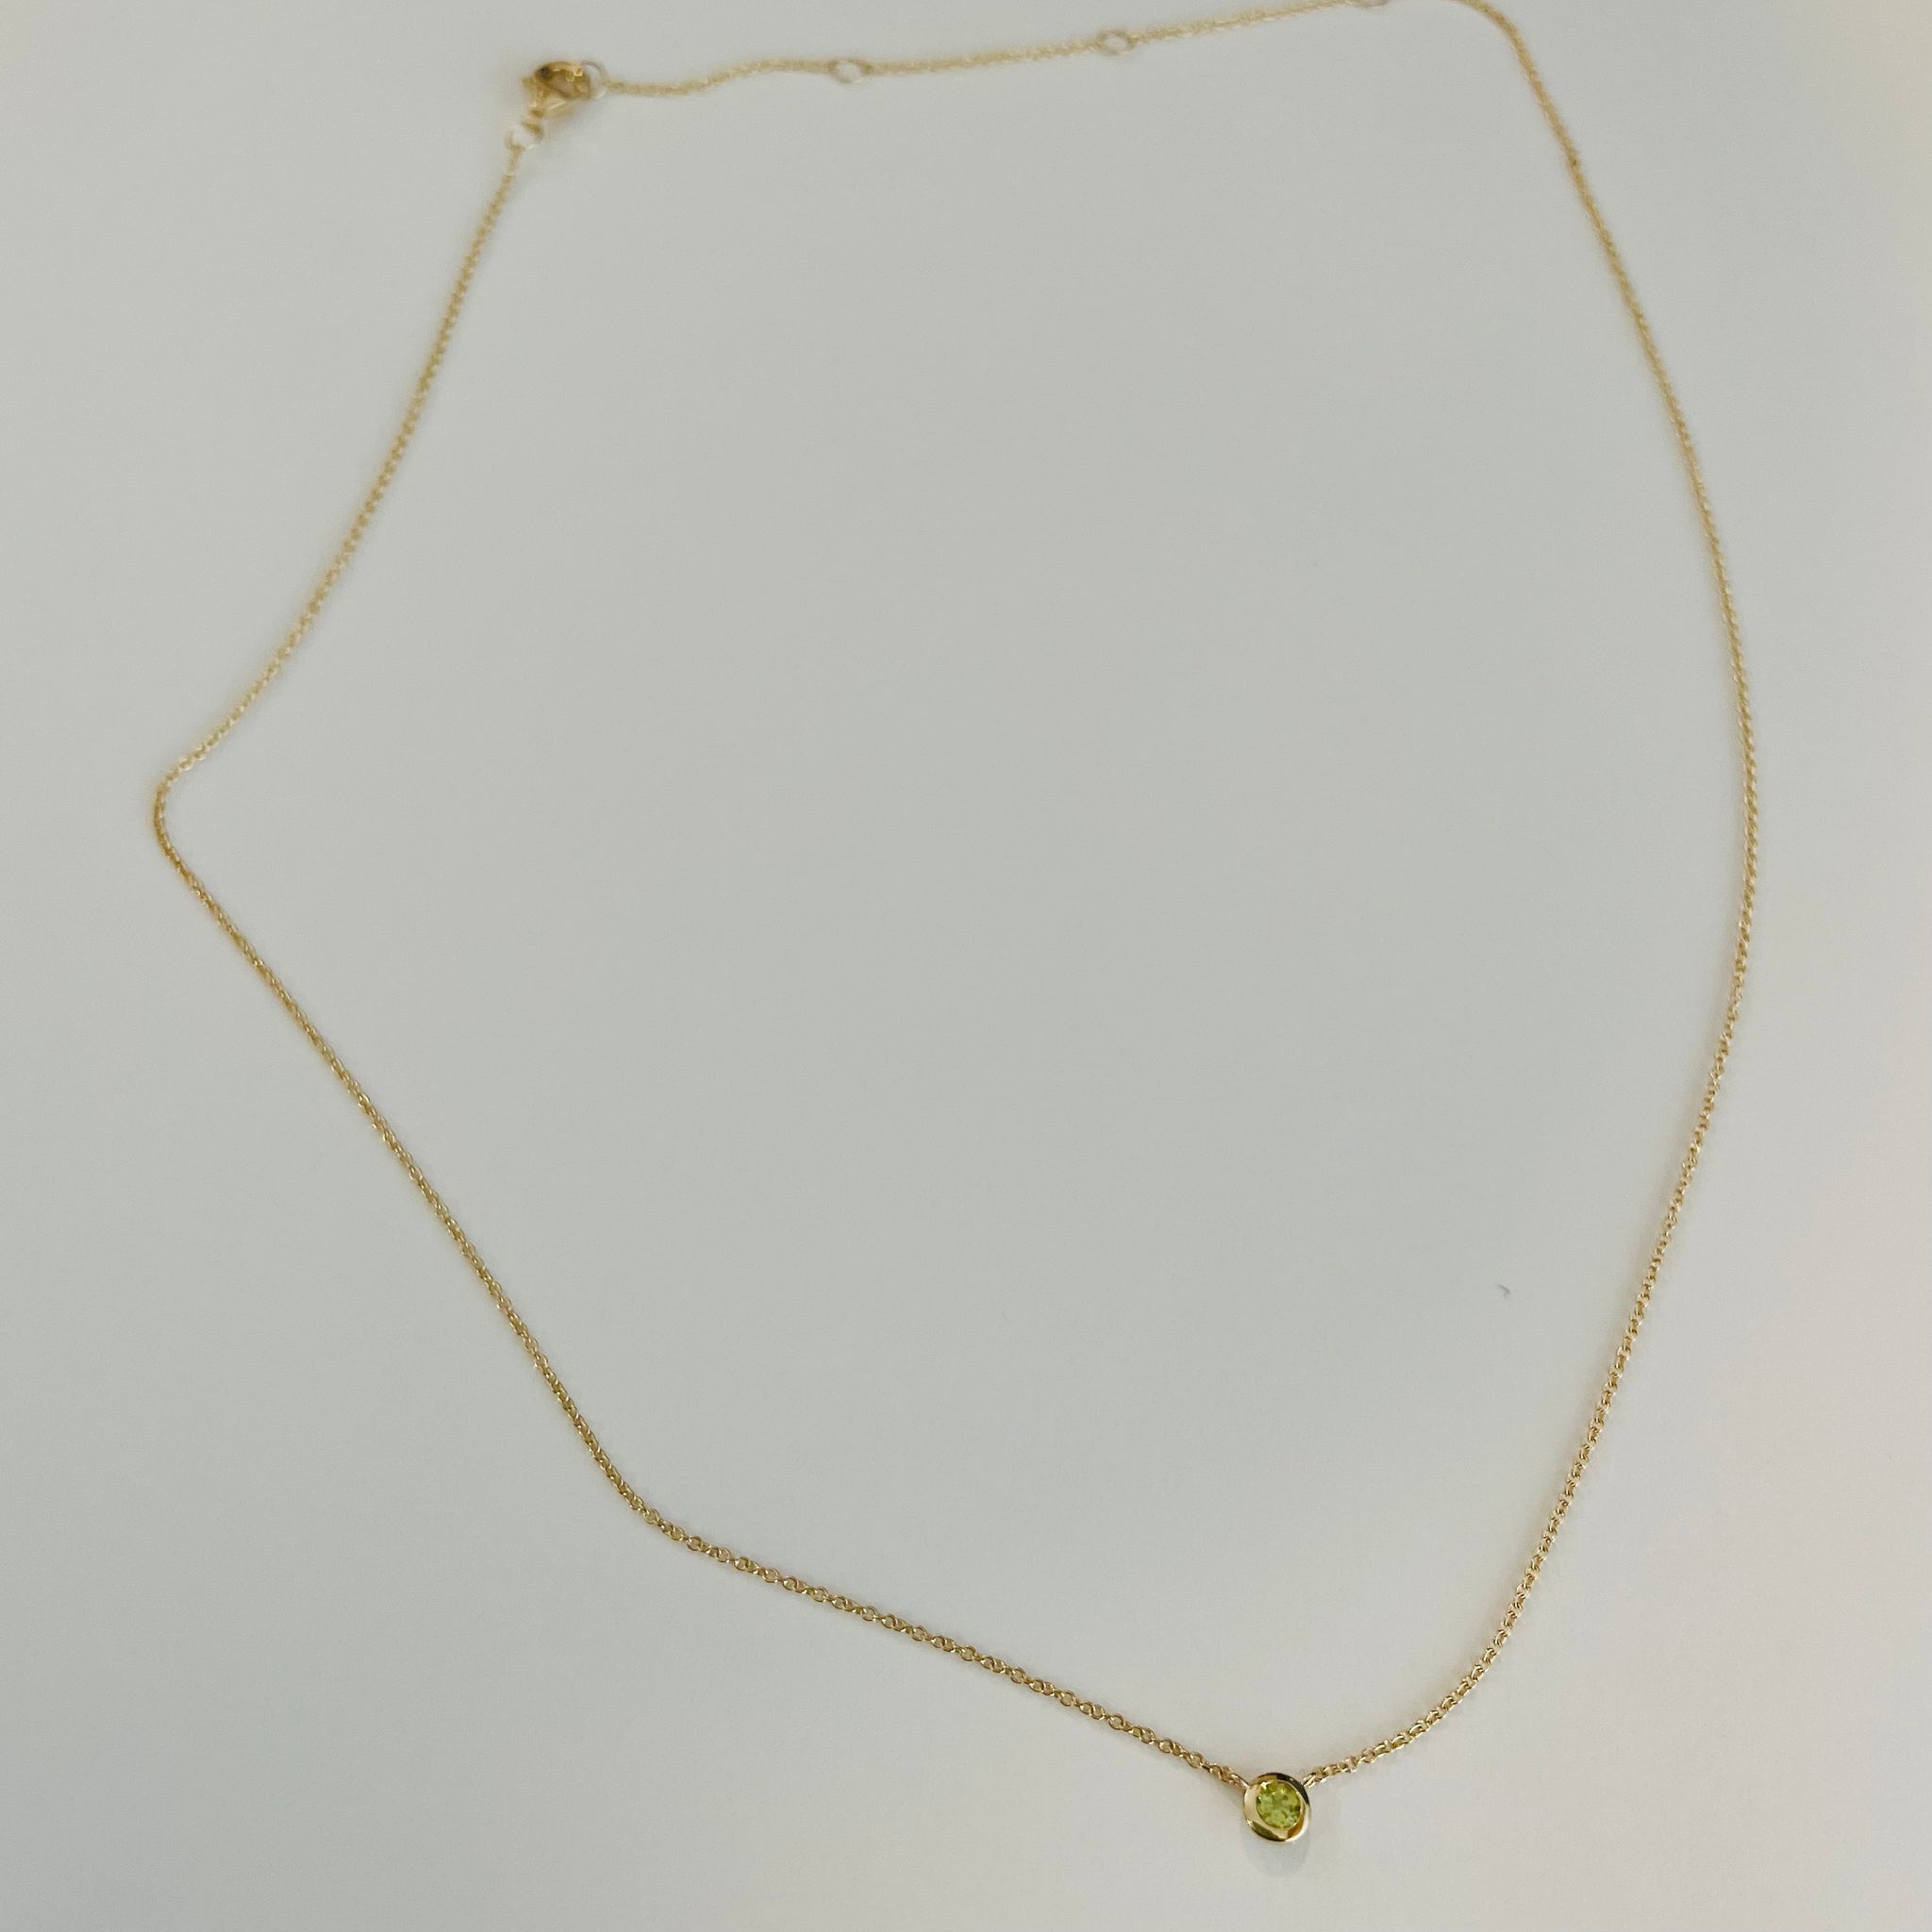 bezel set peridot necklace